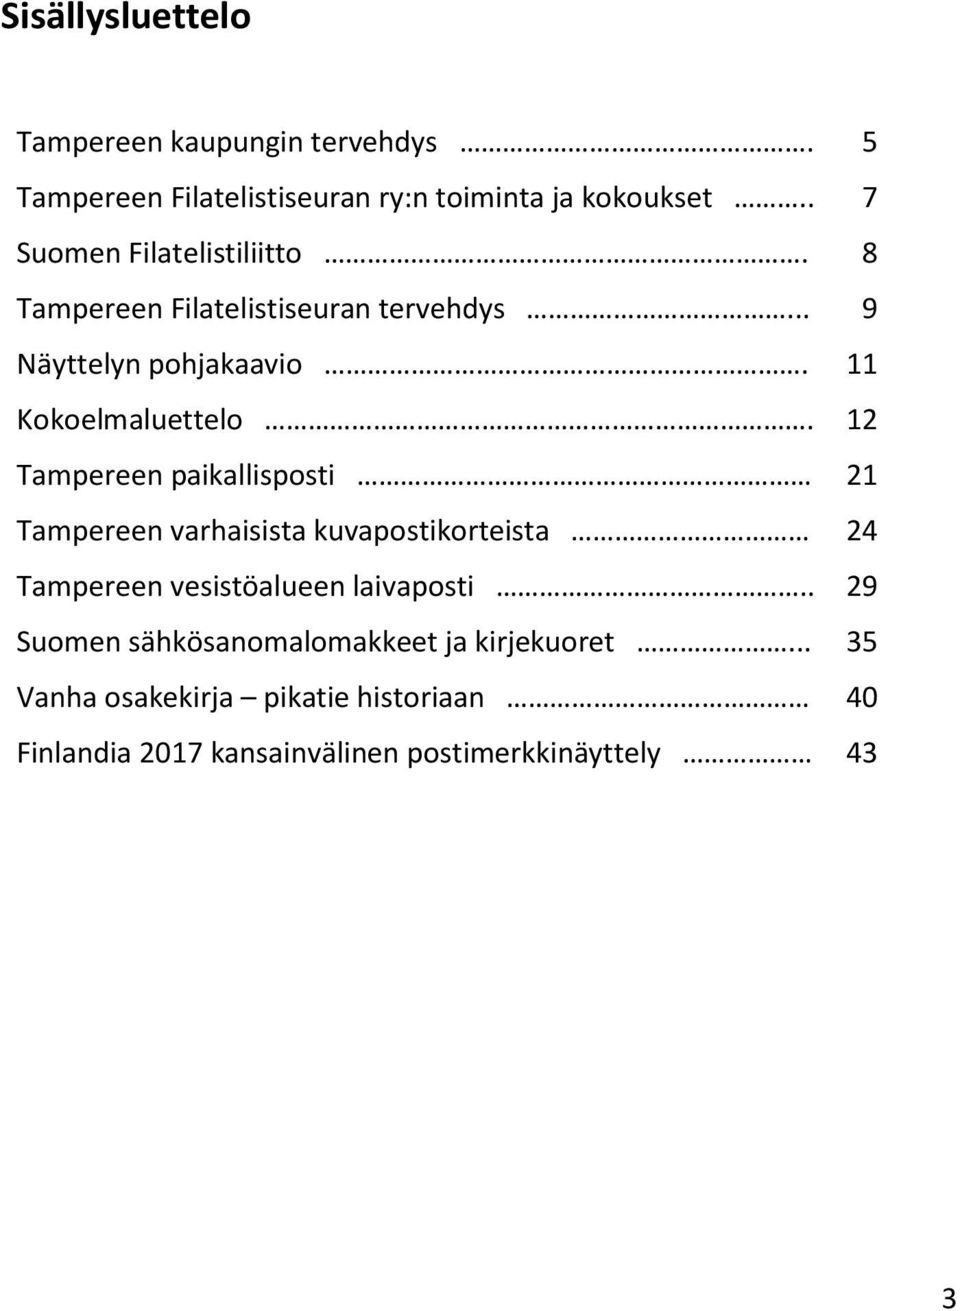 Tampereen paikallisposti Tampereen varhaisista kuvapostikorteista Tampereen vesistöalueen laivaposti.